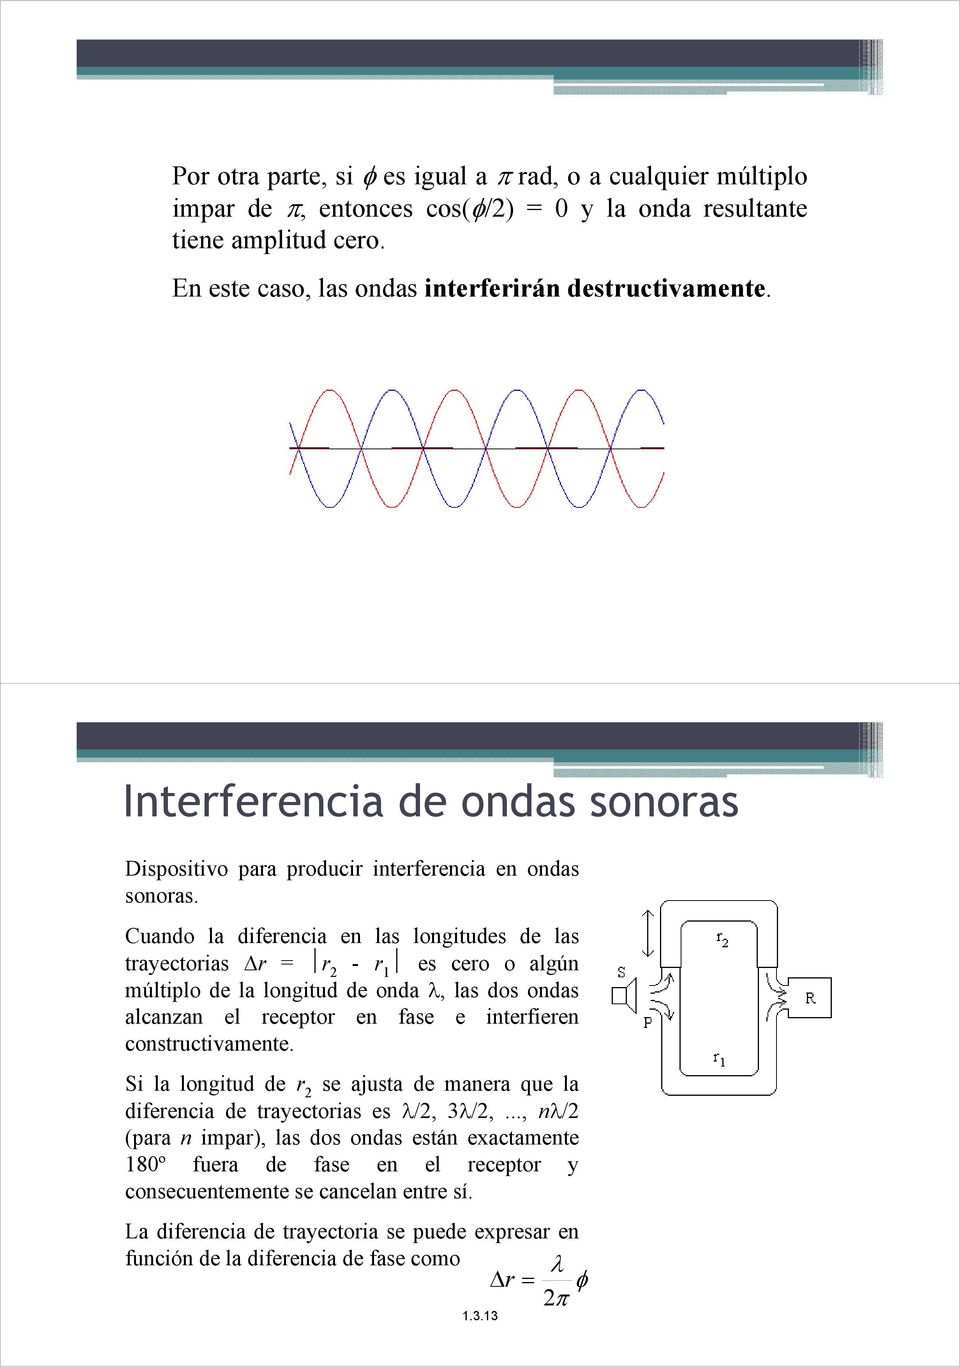 Cuando la diferencia en las longitudes de las trayectorias r = r - r 1 es cero o algún múltiplo de la longitud de onda, las dos ondas alcanzan el receptor en fase e interfieren constructivamente.